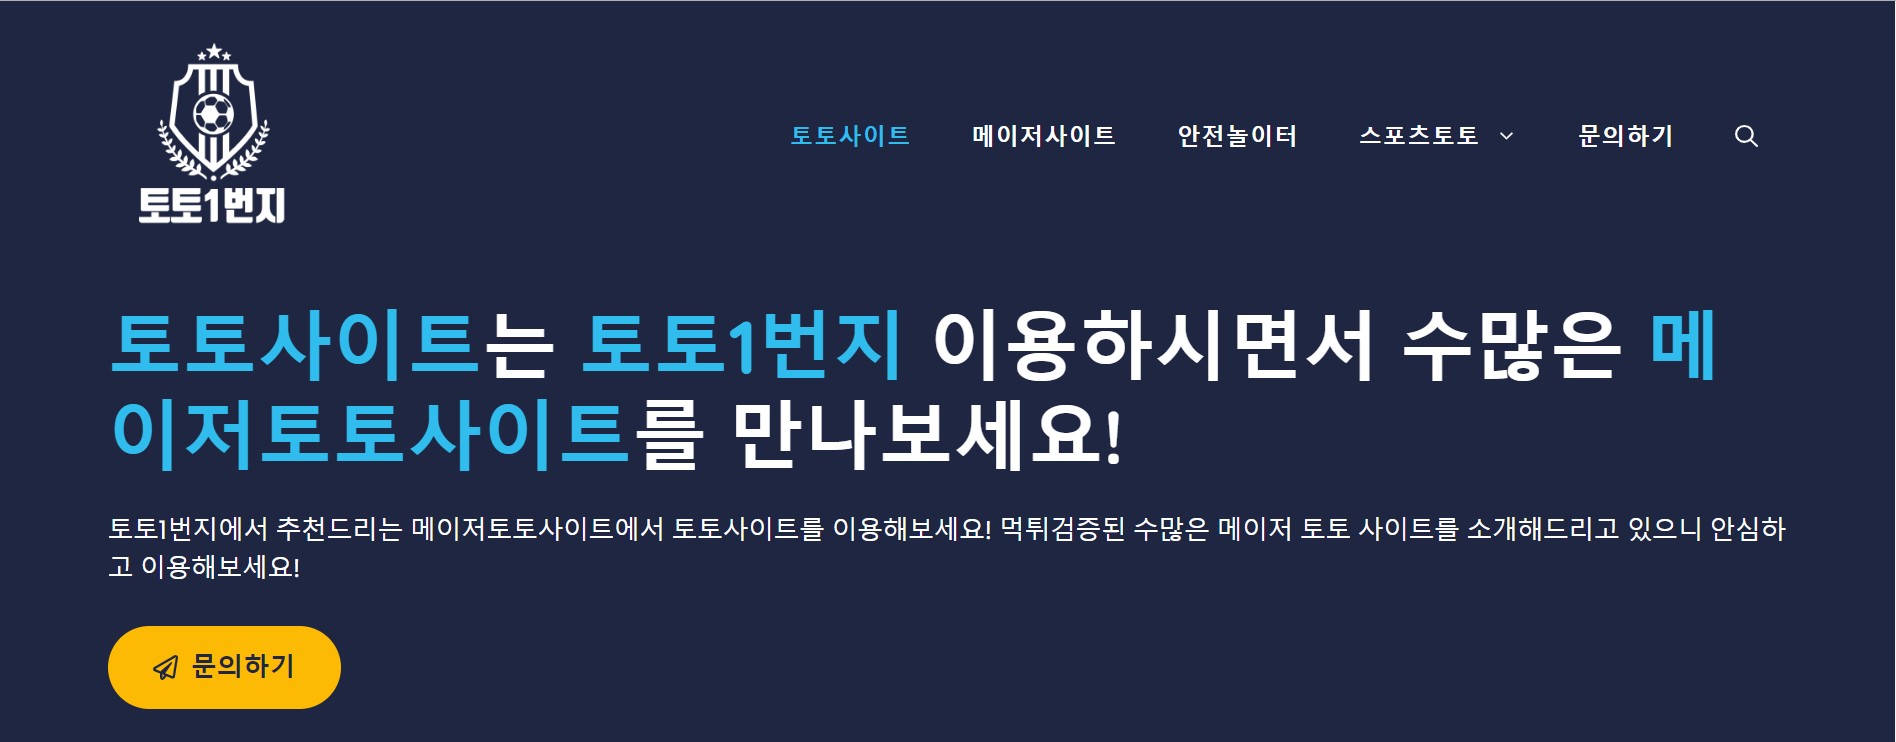 한국에서 성공적인 온라인 스포츠 베팅을 위한 최고의 팁